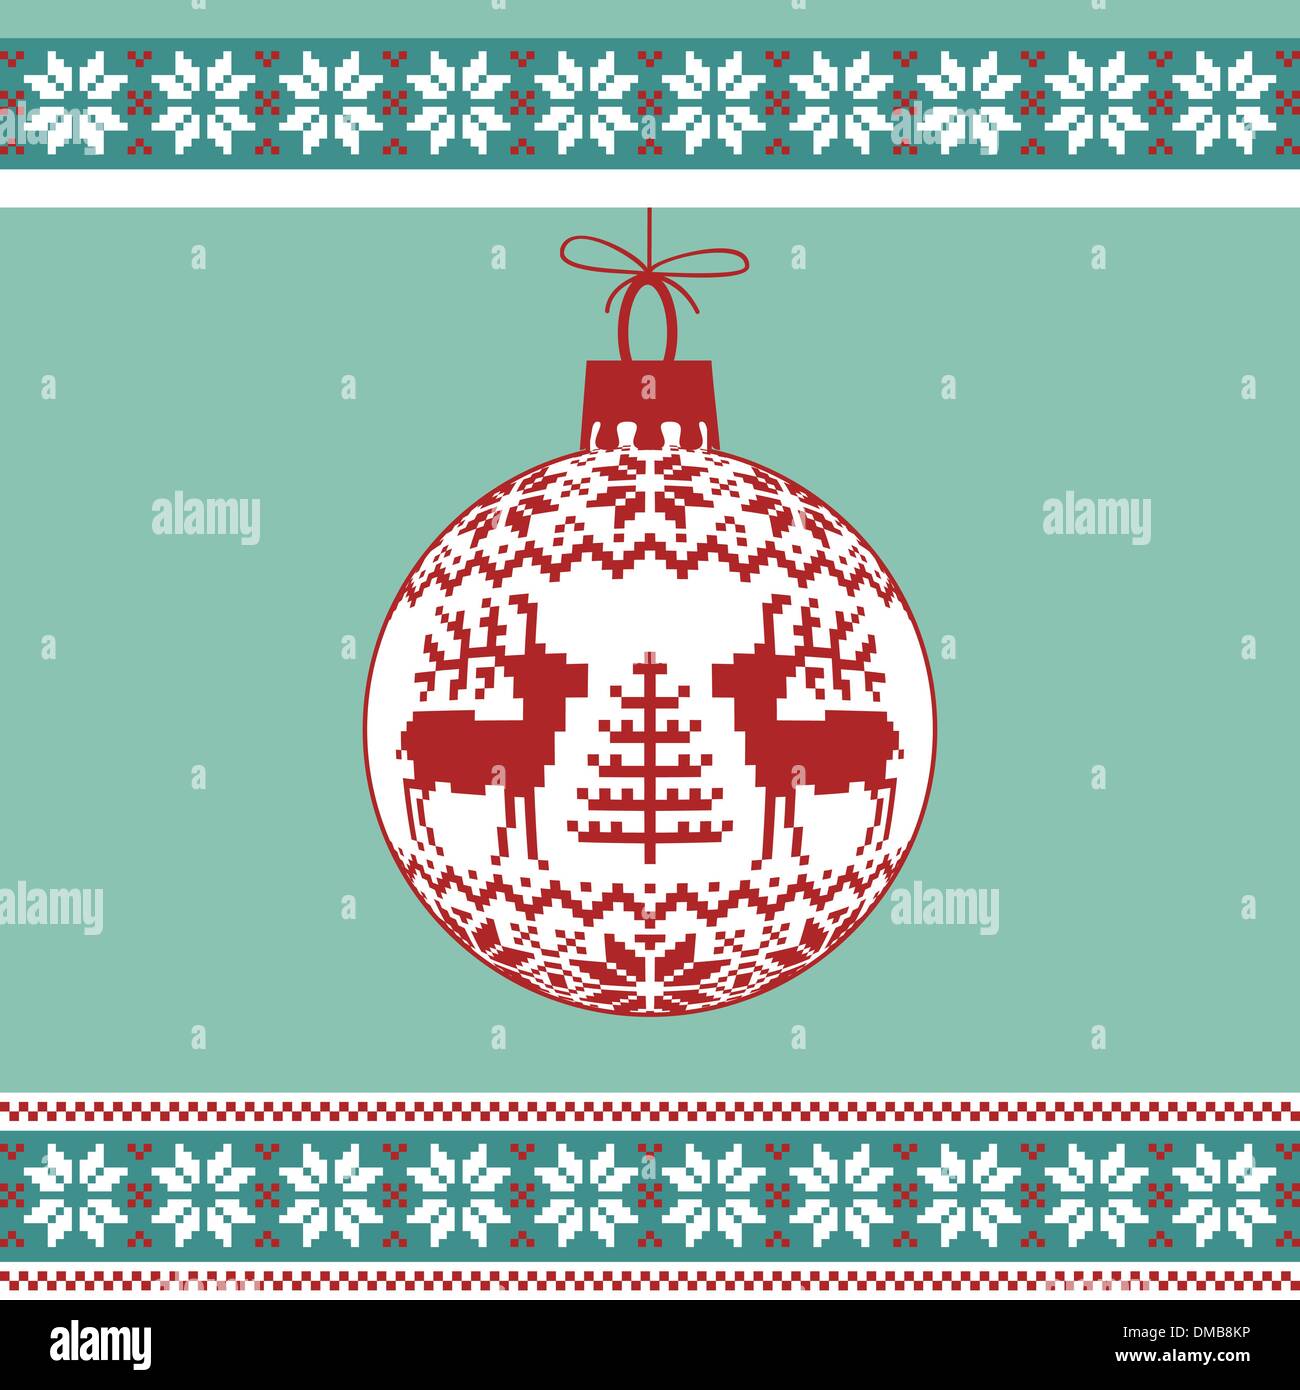 Weihnachtskugel mit nordischen Muster Stock Vektor